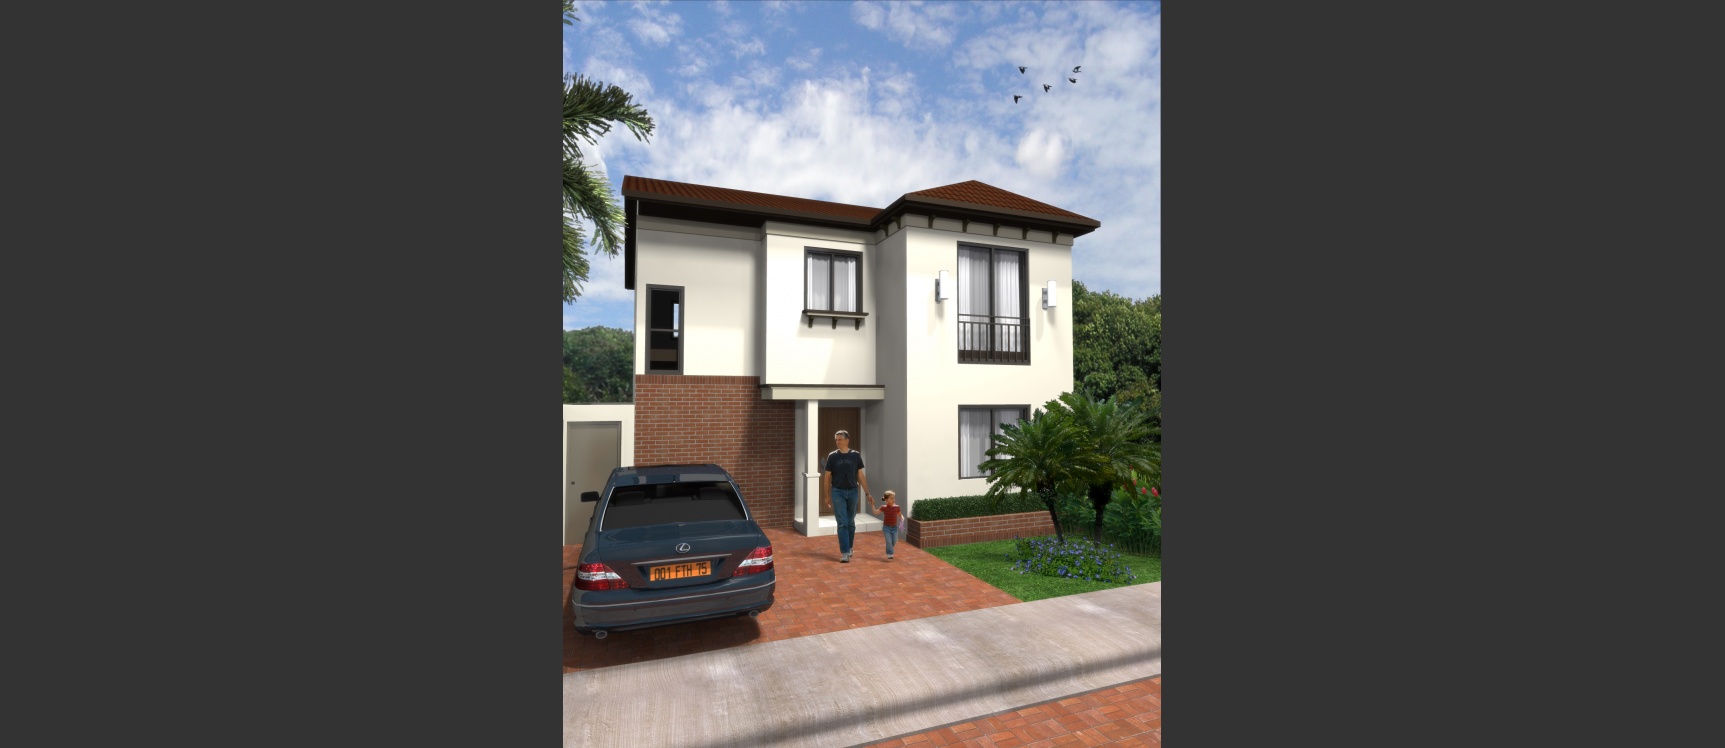 GeoBienes - Costabrisa: Casas en venta Vía a la Costa Guayaquil - Plusvalia Guayaquil Casas de venta y alquiler Inmobiliaria Ecuador